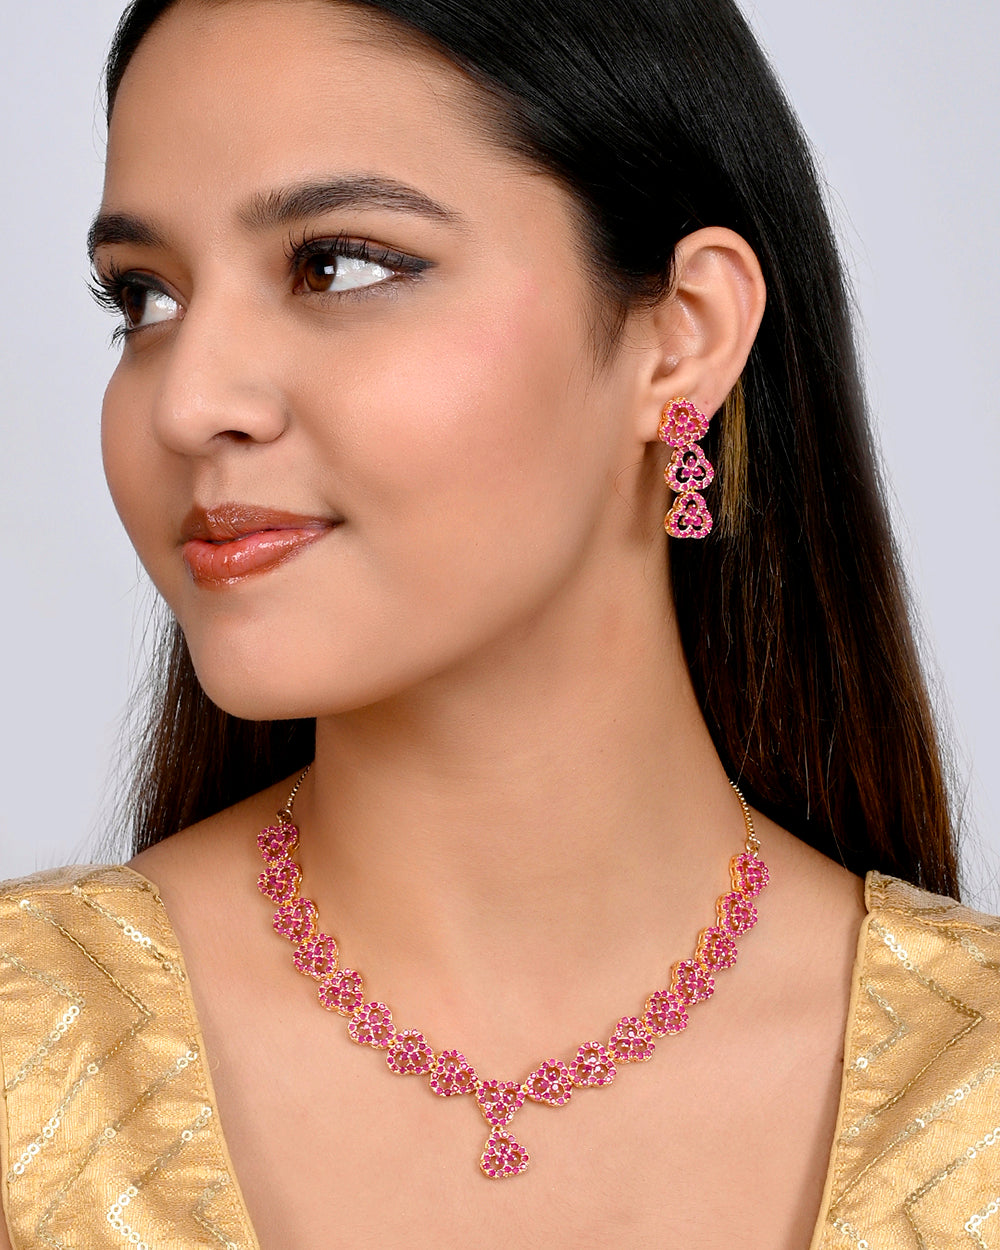 Women's Sparkling Essentials Pink Round Cut Zircons Cutwork Jewellery Set - Voylla